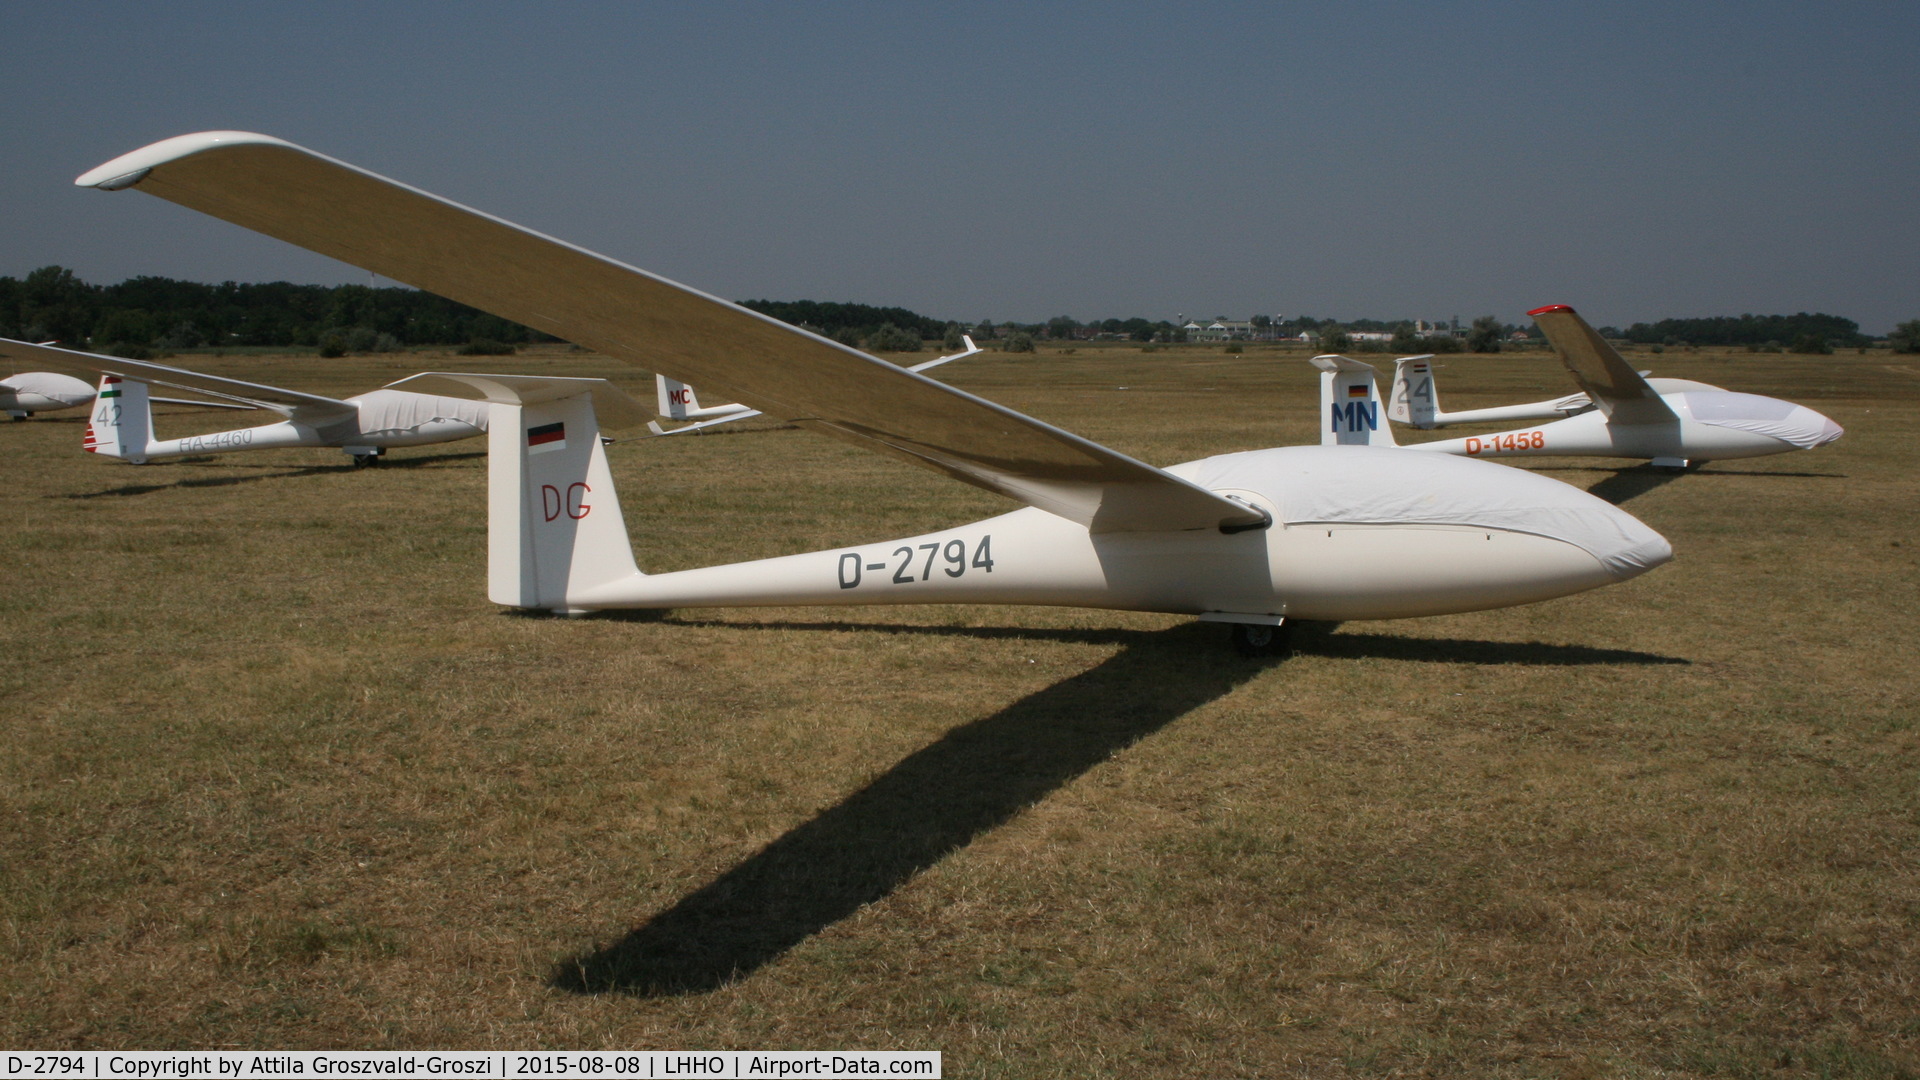 D-2794, 1977 Schempp-Hirth Mini-Nimbus B C/N 56, Hajdúszoboszló Airport, Hungary - 60. Hungary Gliding National Championship and third Civis Thermal Cup, 2015